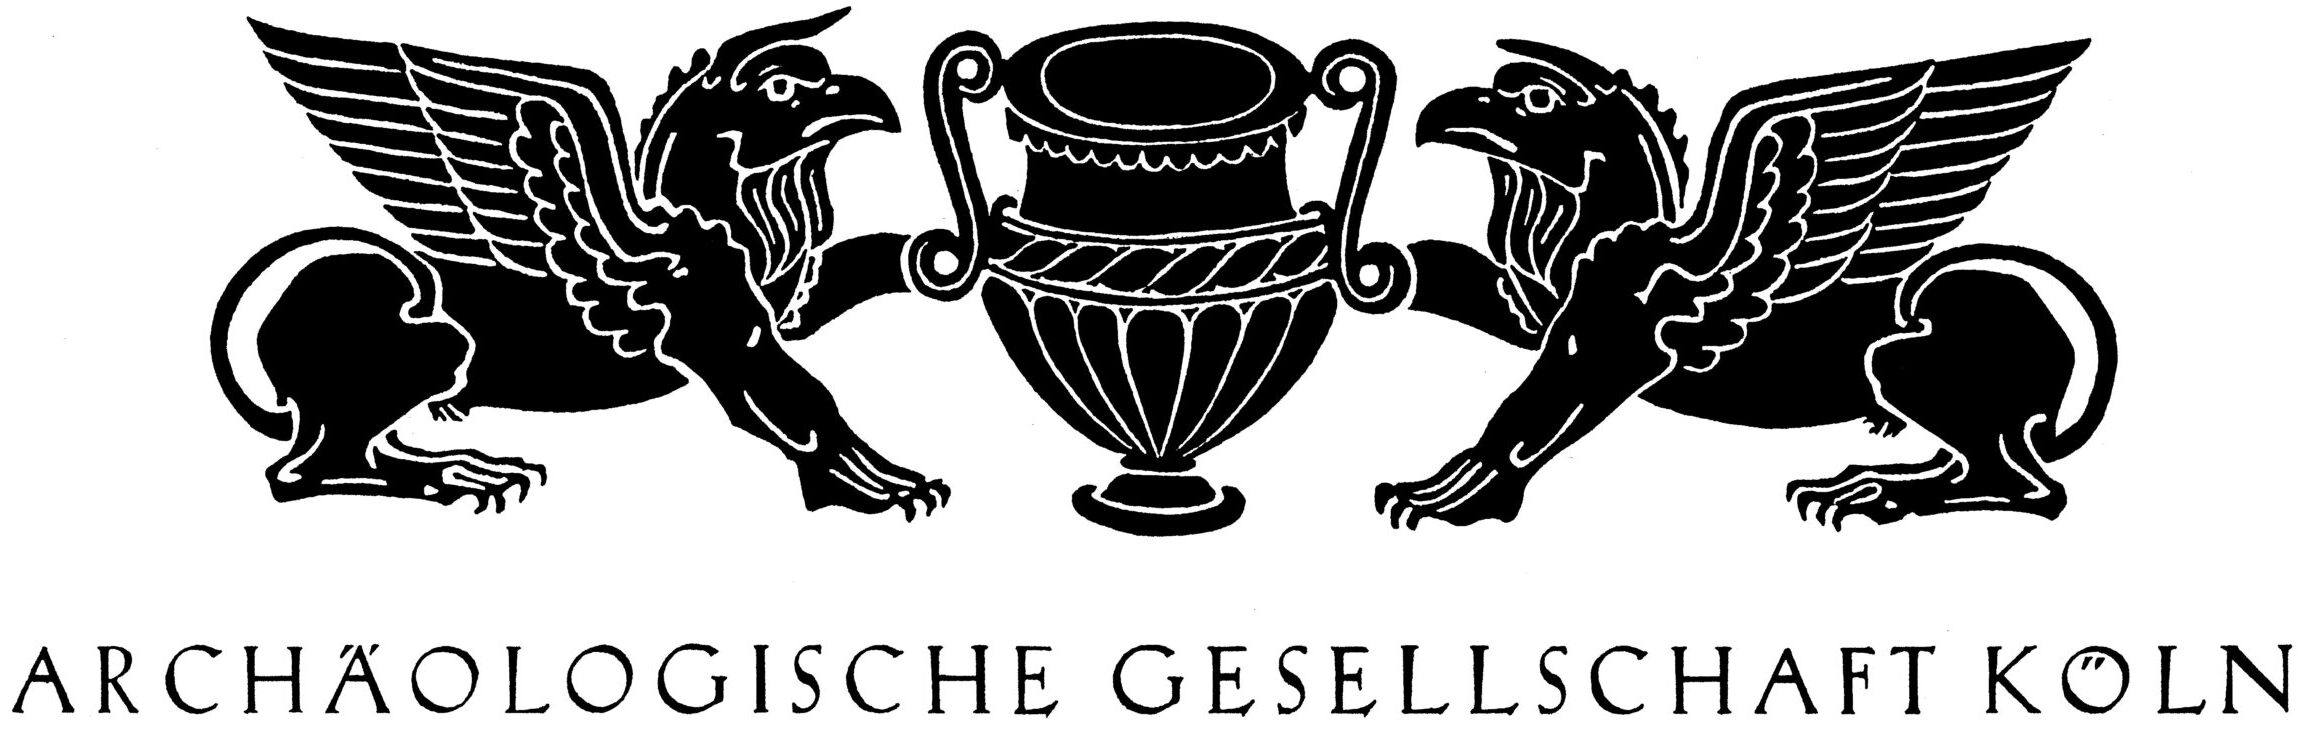 Archäologische Gesellschaft Köln